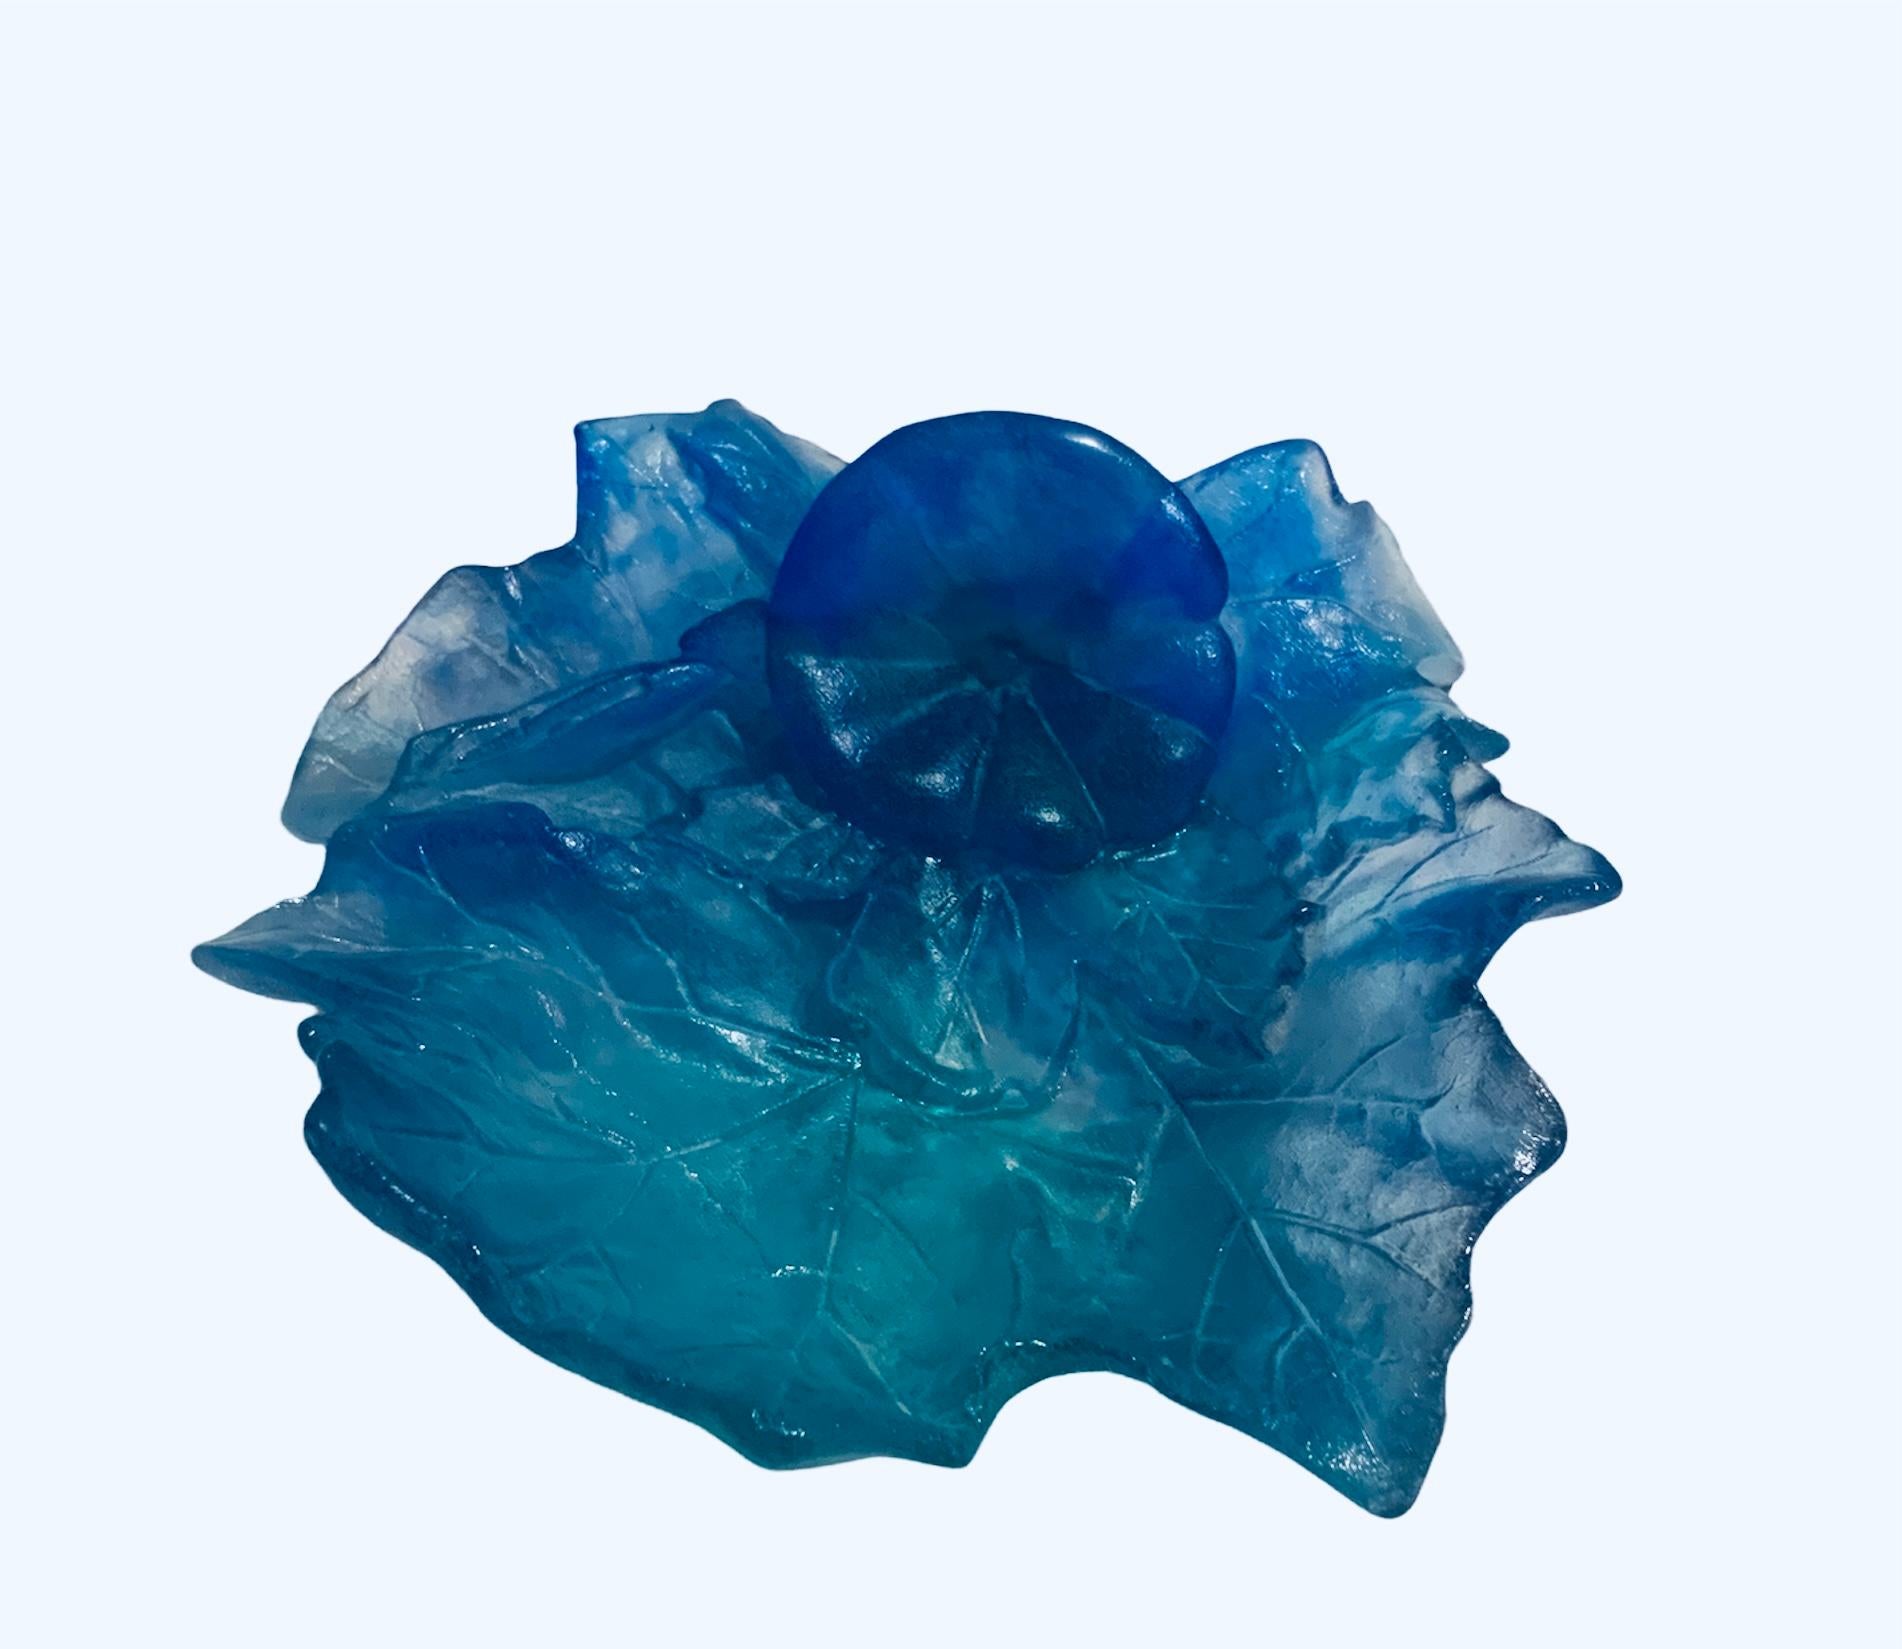 Il s'agit d'un bol en cristal Daum en forme de Pate de Verre avec une seule fleur (il peut s'agir d'un Groundsel) et de grandes feuilles représentant différentes nuances de bleu et de turquoise.